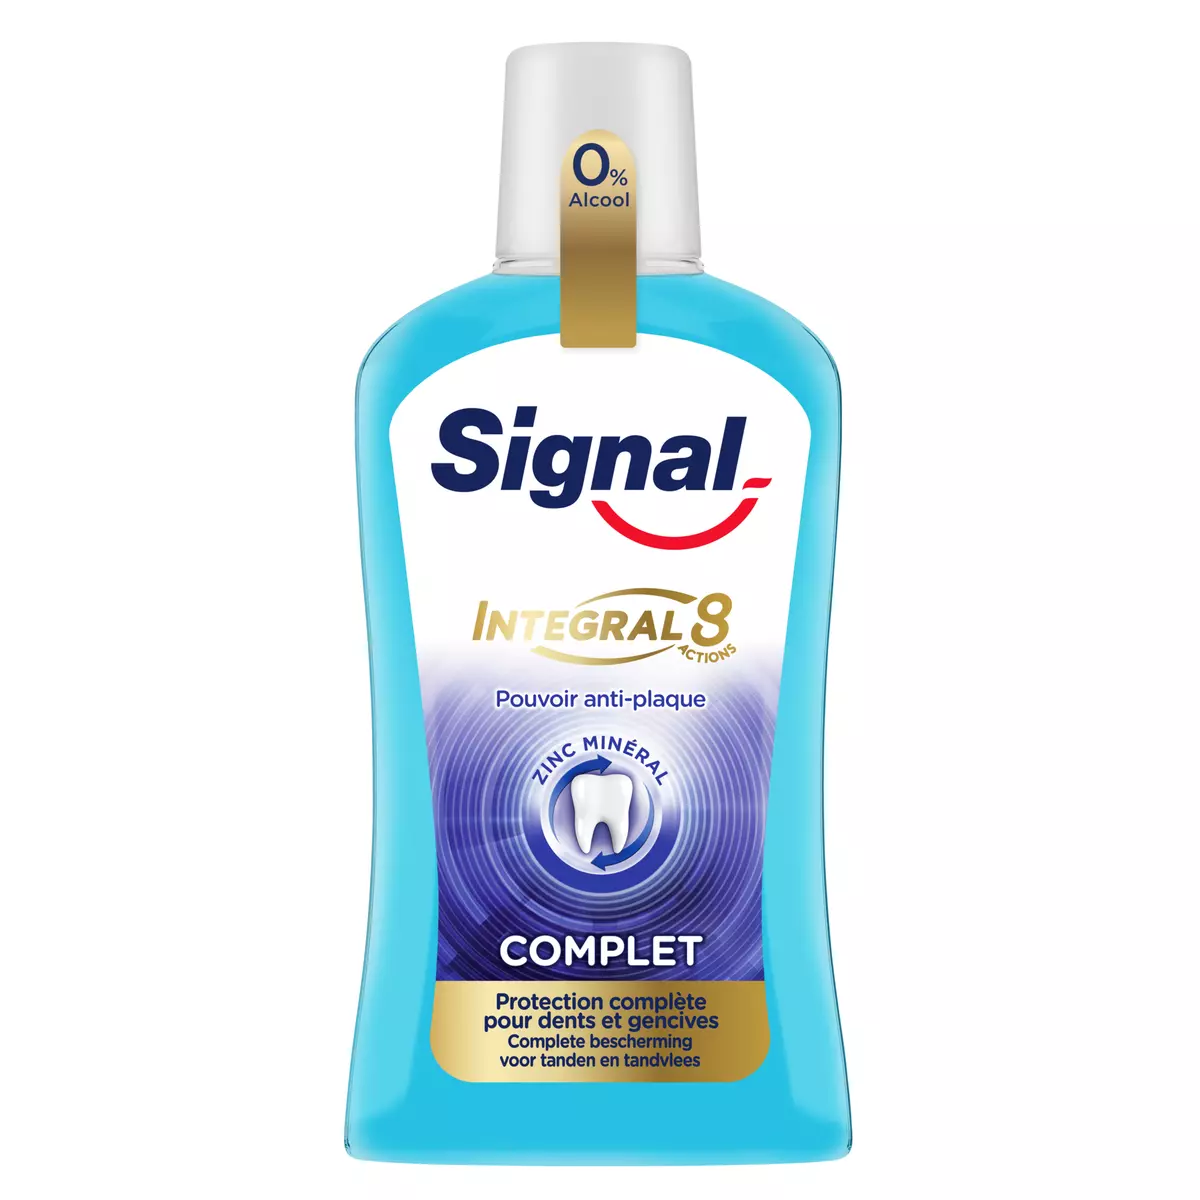 SIGNAL Integral 8 Bain de Bouche antibactérien protection complète 500ml